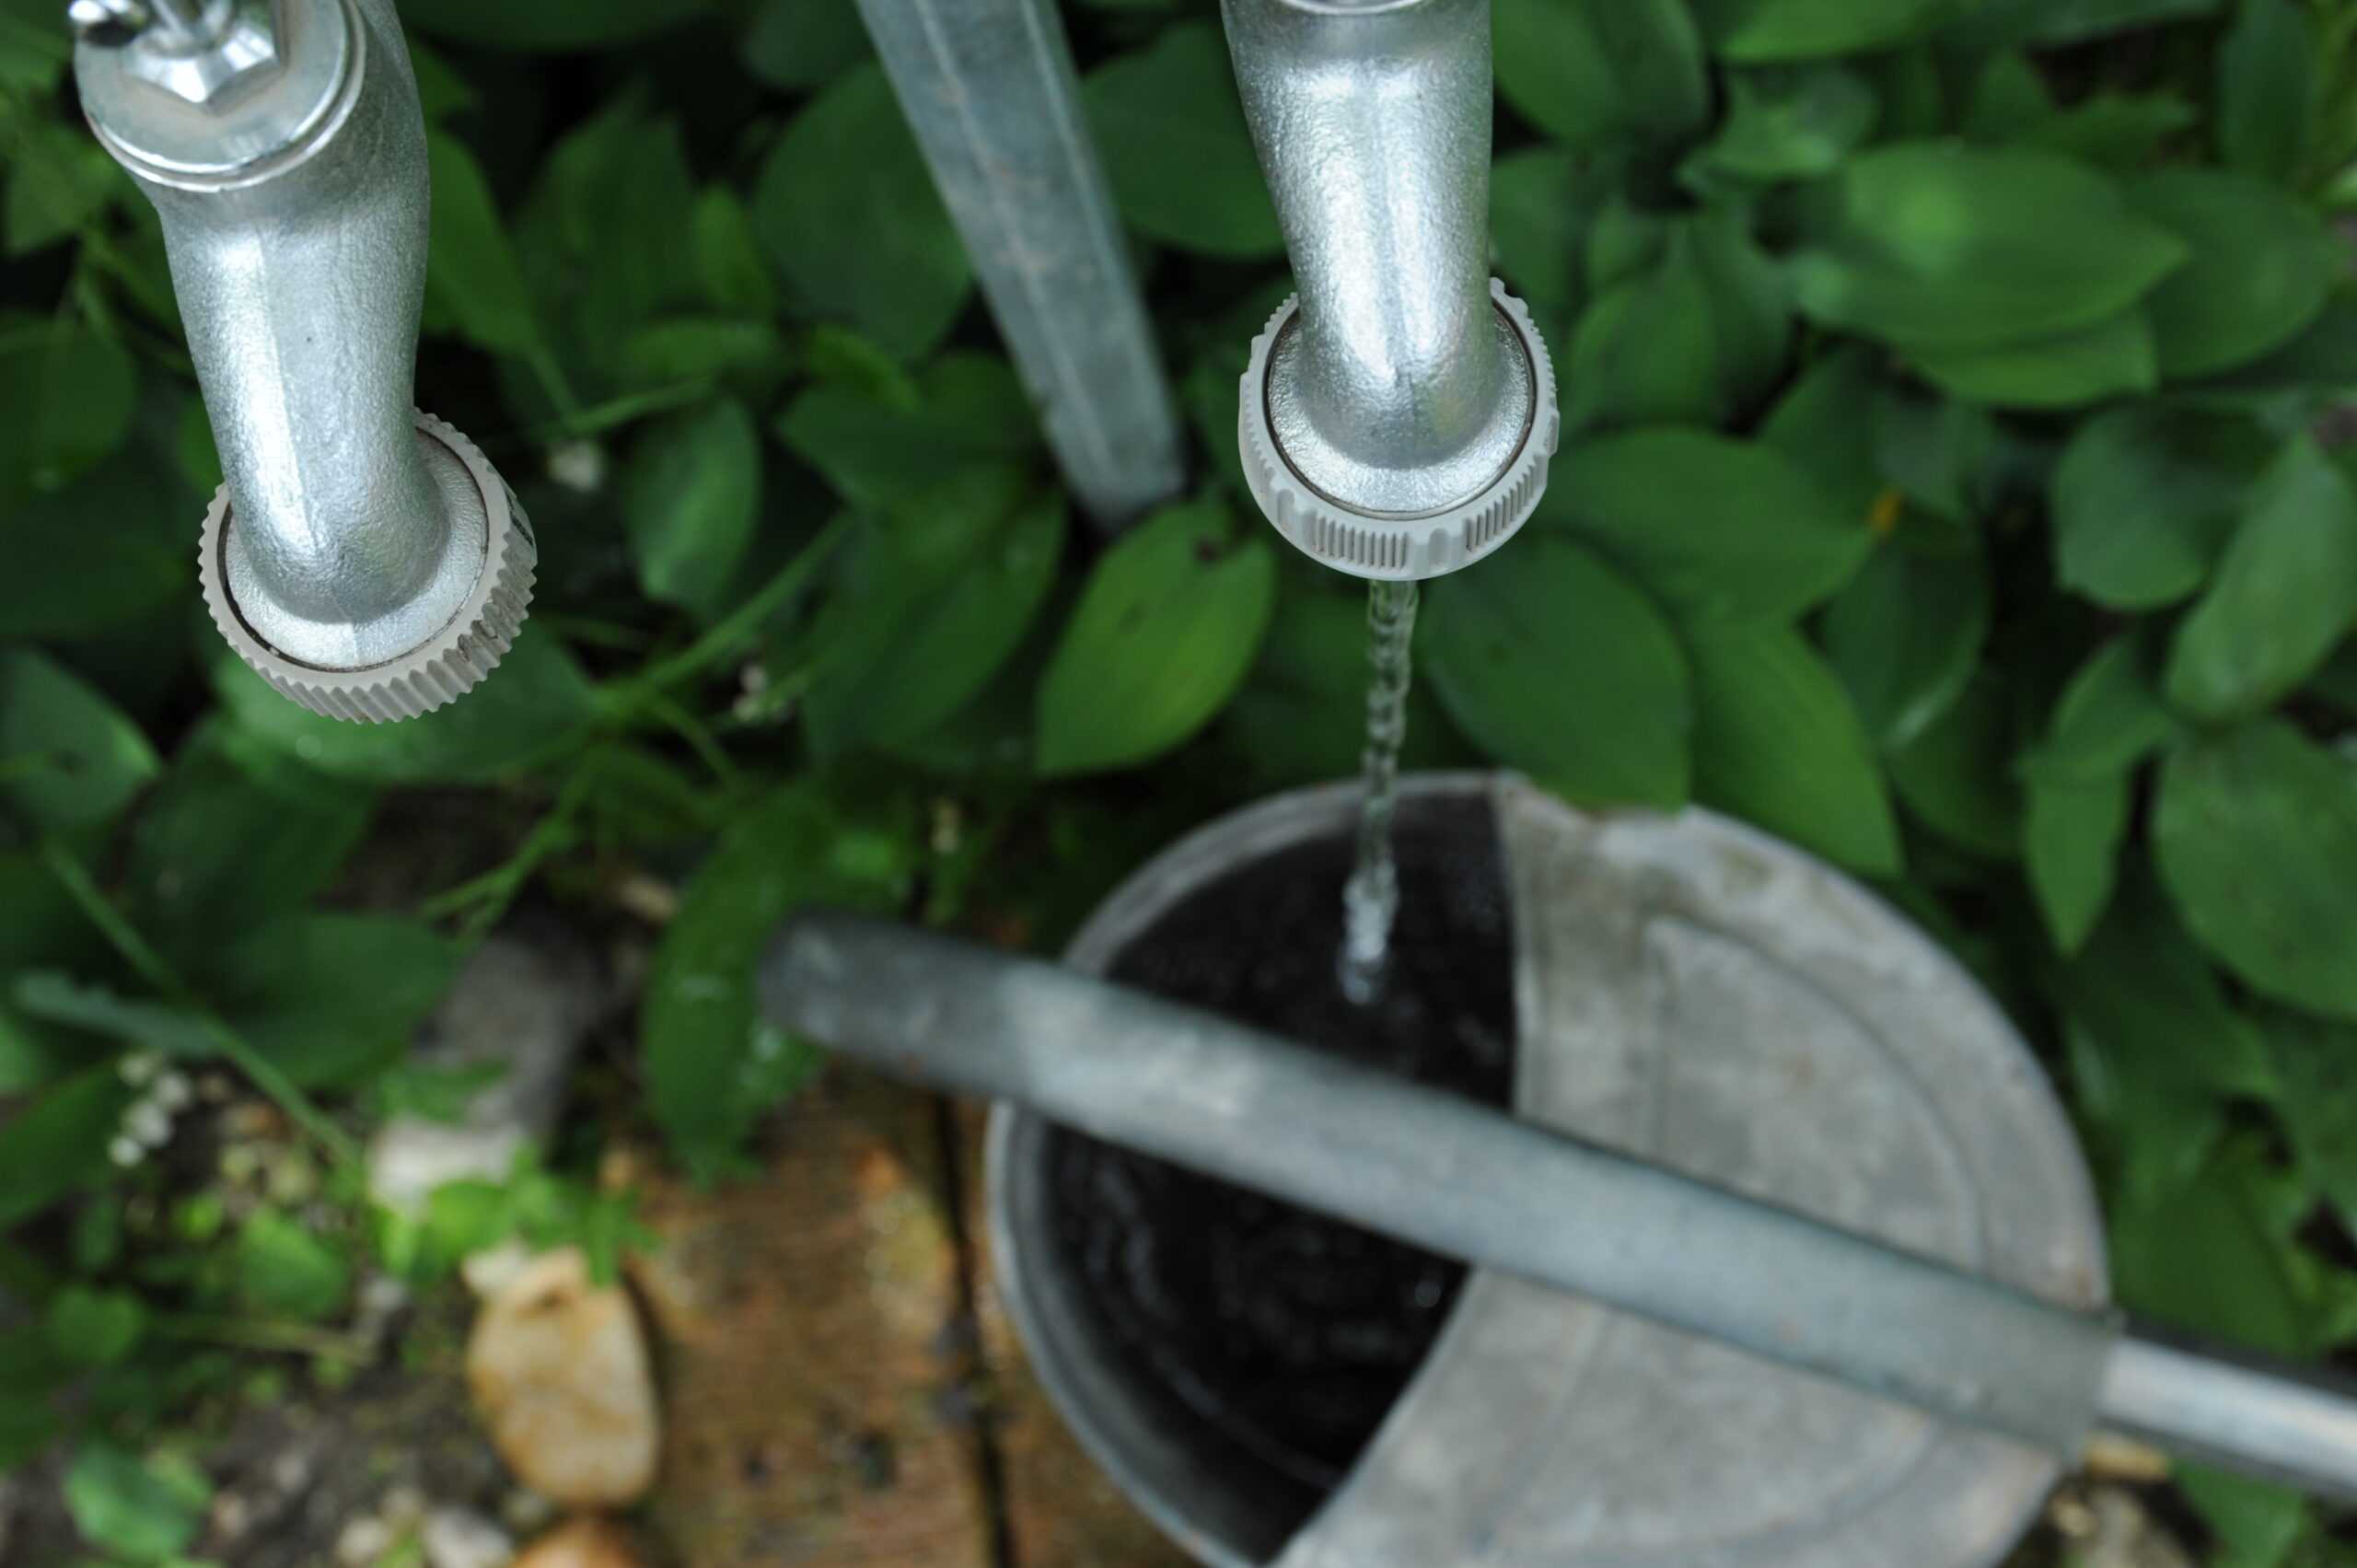 Das Foto zeigt einen rinnenden Wasserhahn. Das Wasser rinnt in eine Metallgießkanne.